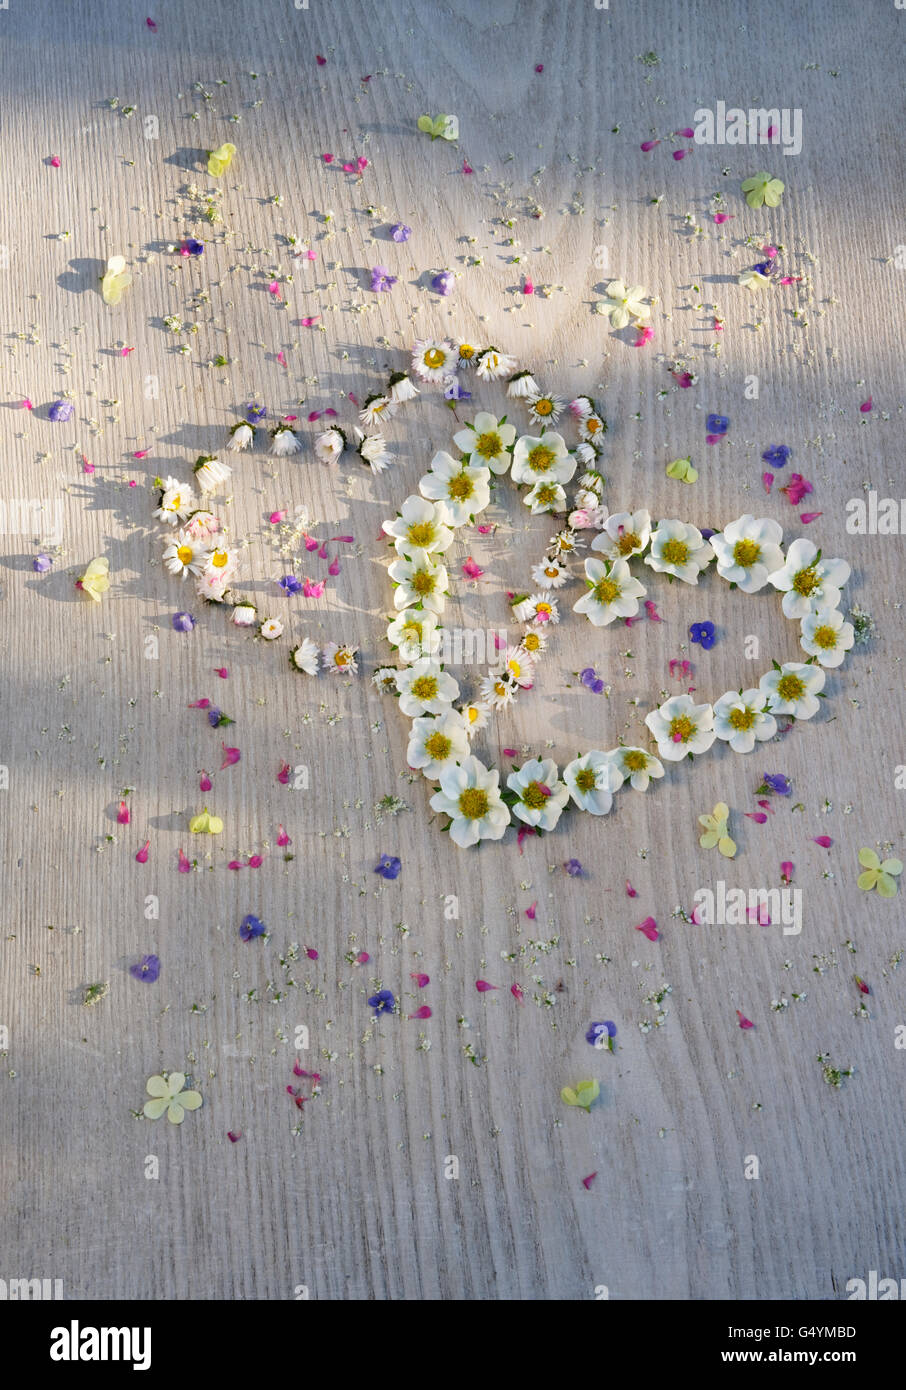 Corazones entrelazados de daisy flores y fresas en placa pintadas de blanco, salpicado de pequeñas flores de verano. Foto de stock